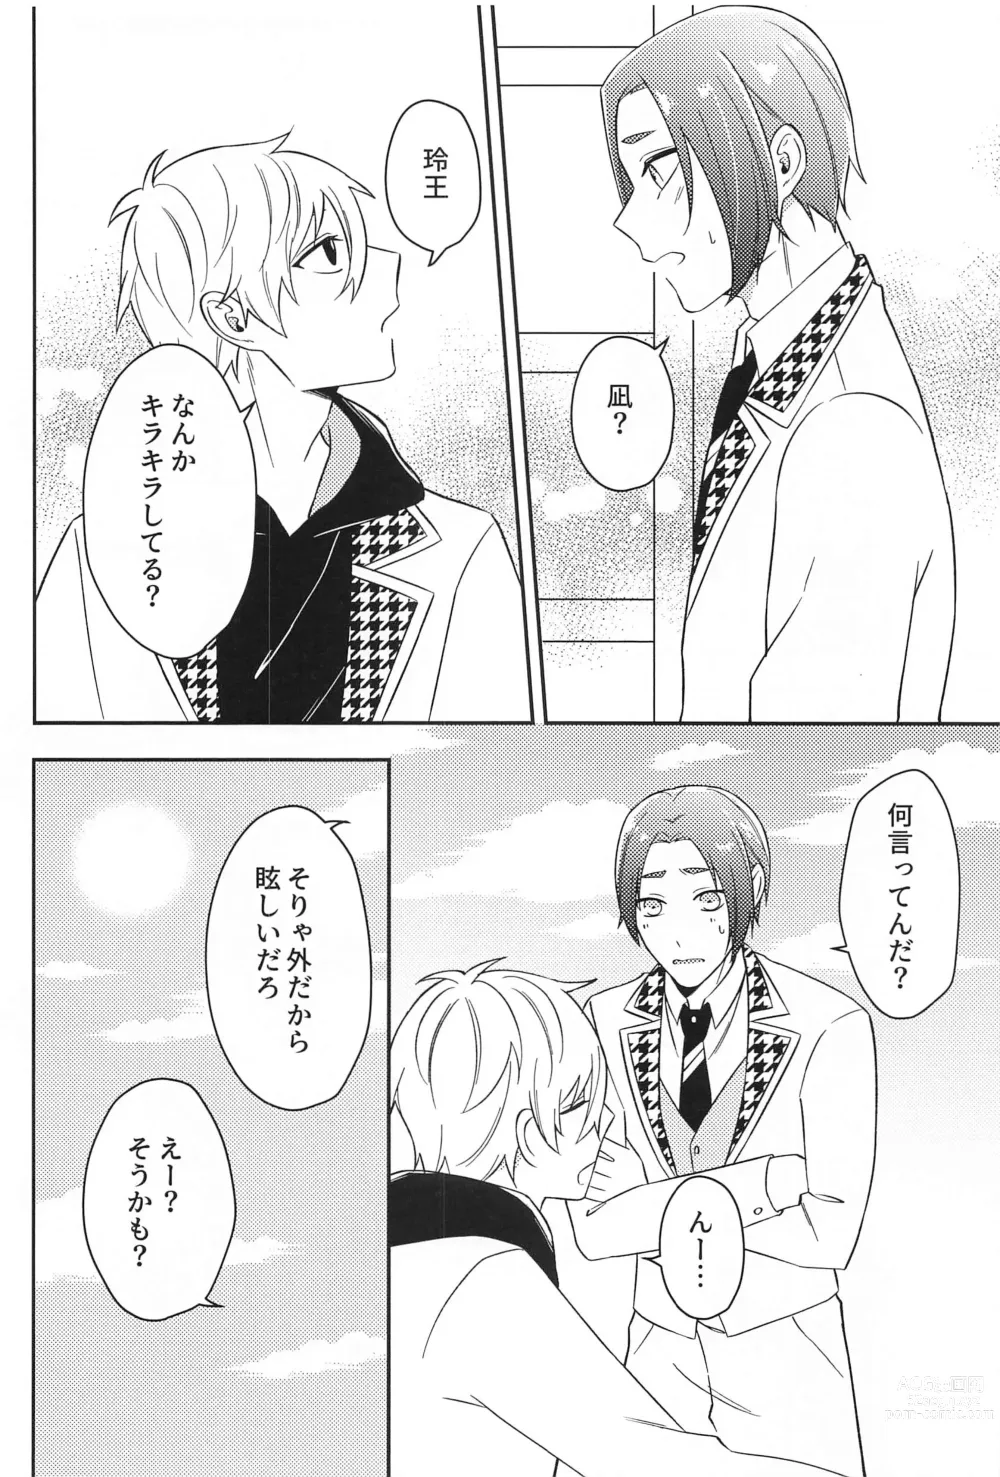 Page 7 of doujinshi Sore ni Namae o Tsukeru nara